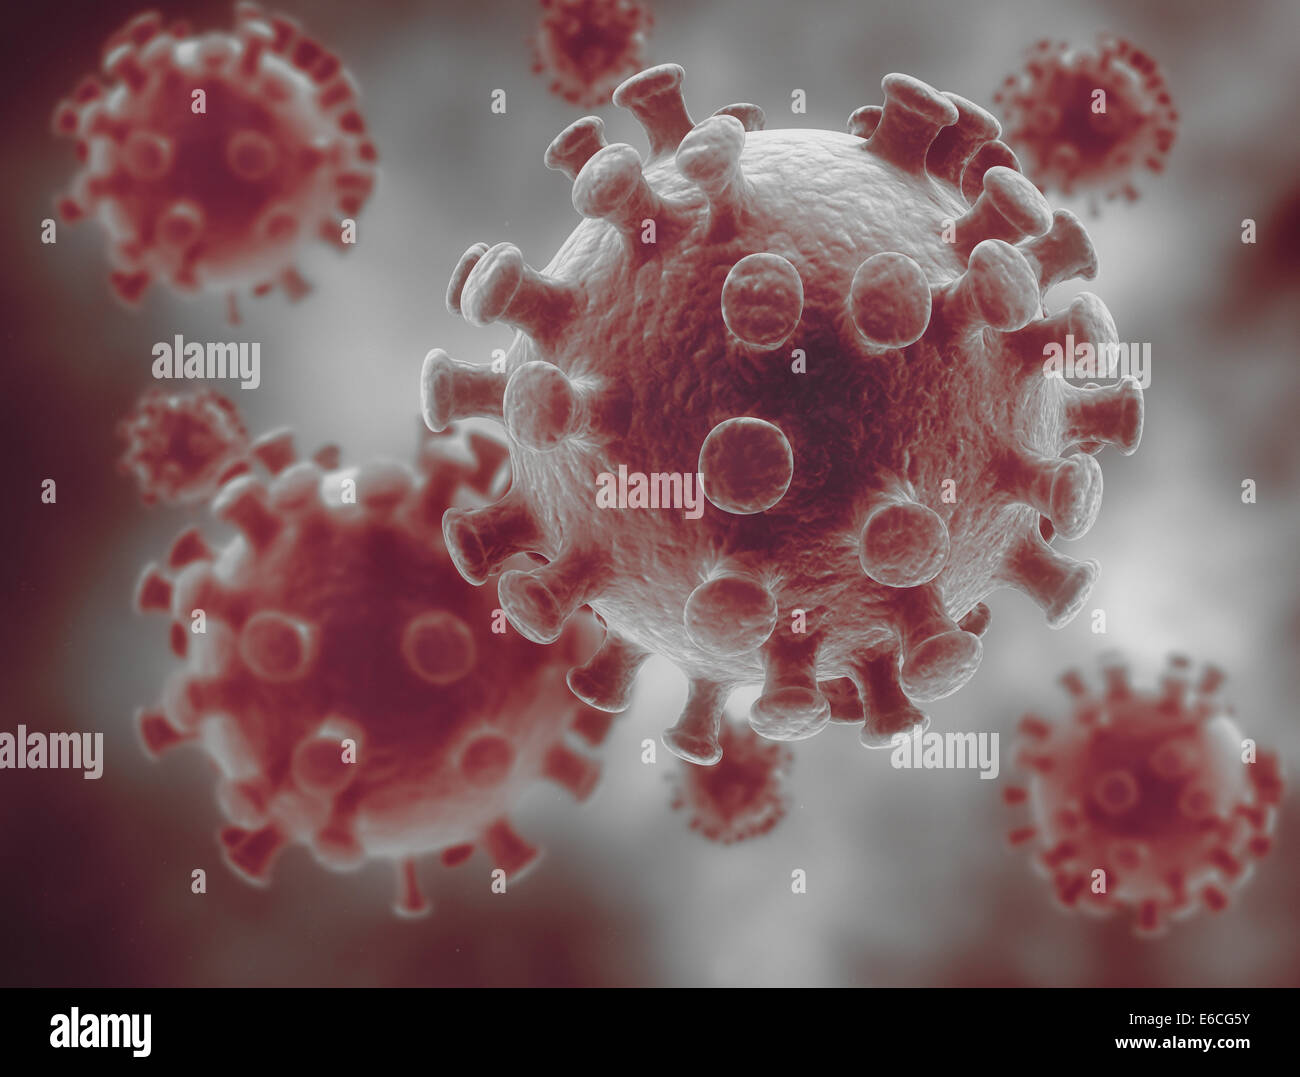 Les bactéries, virus, cell 3d Banque D'Images